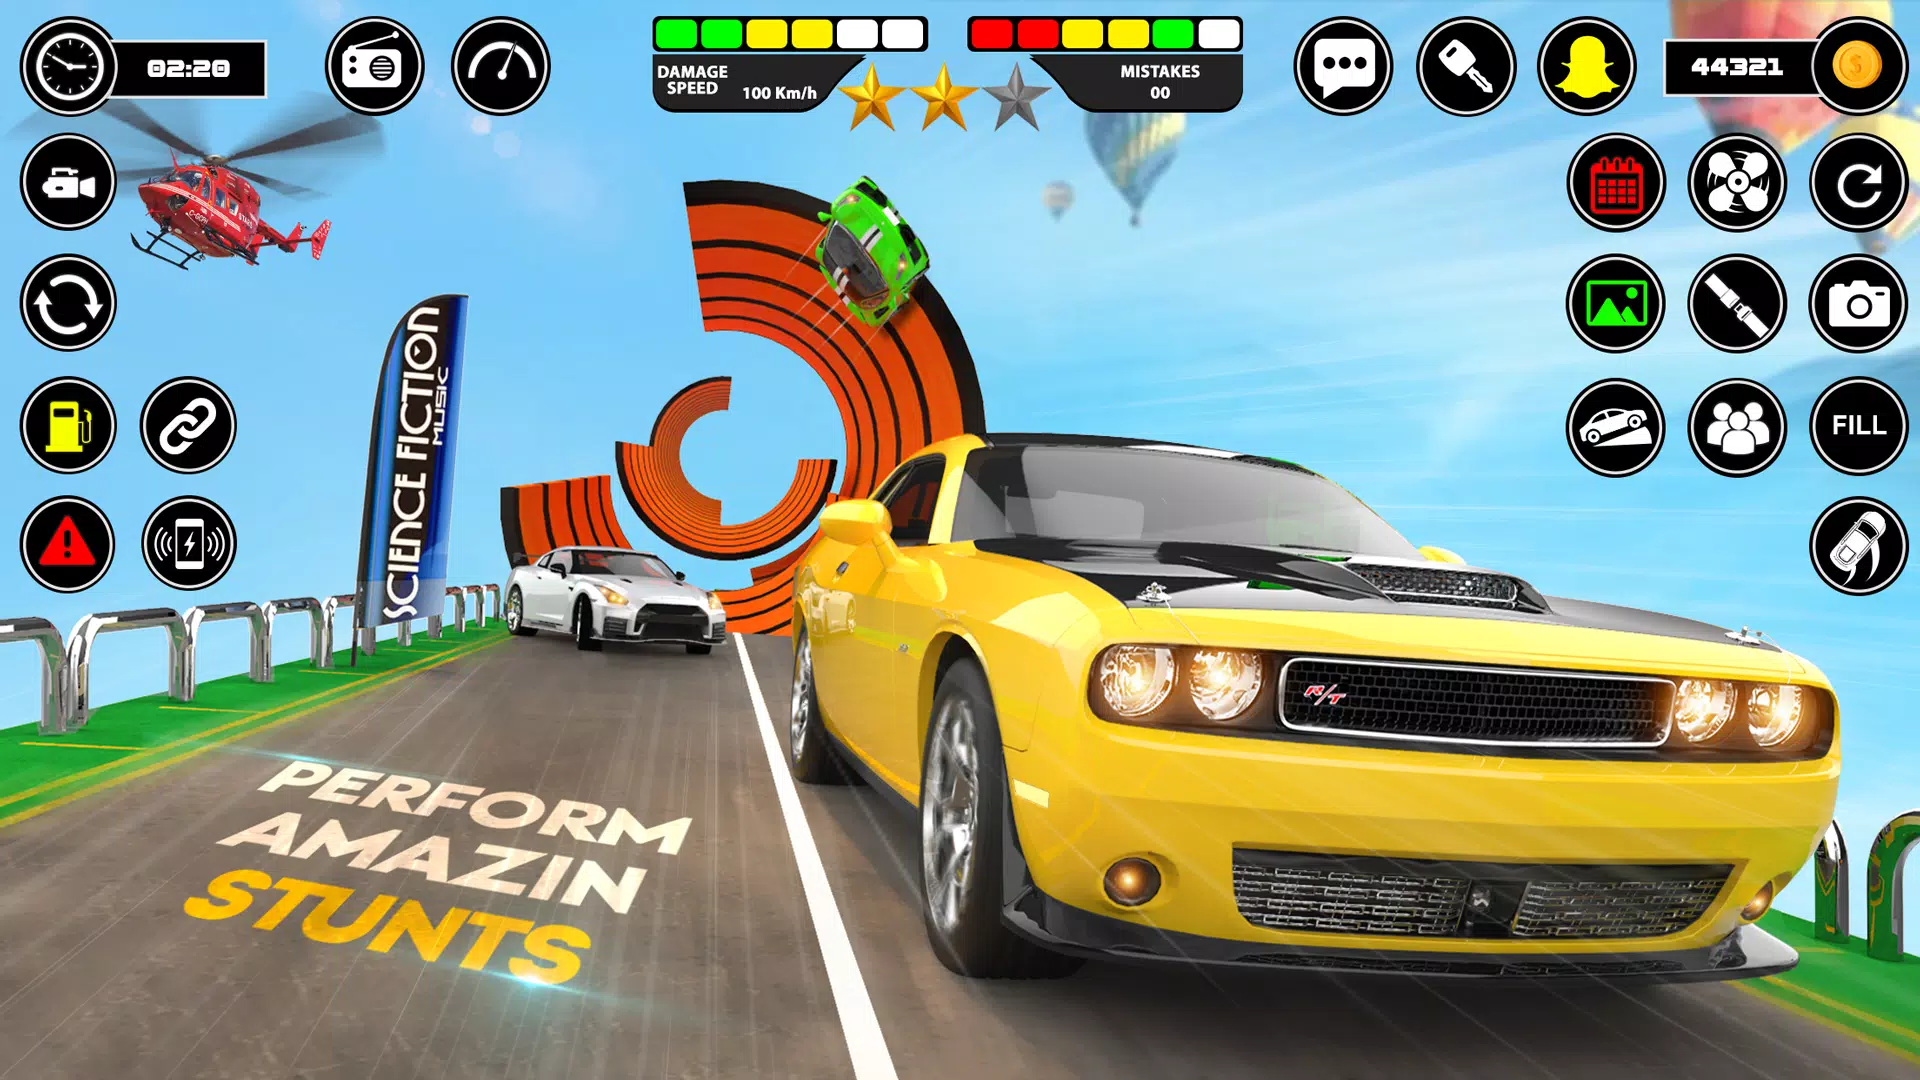 Crazy Car Driving Games: 3D Ramp Car Racing Games APK برای دانلود